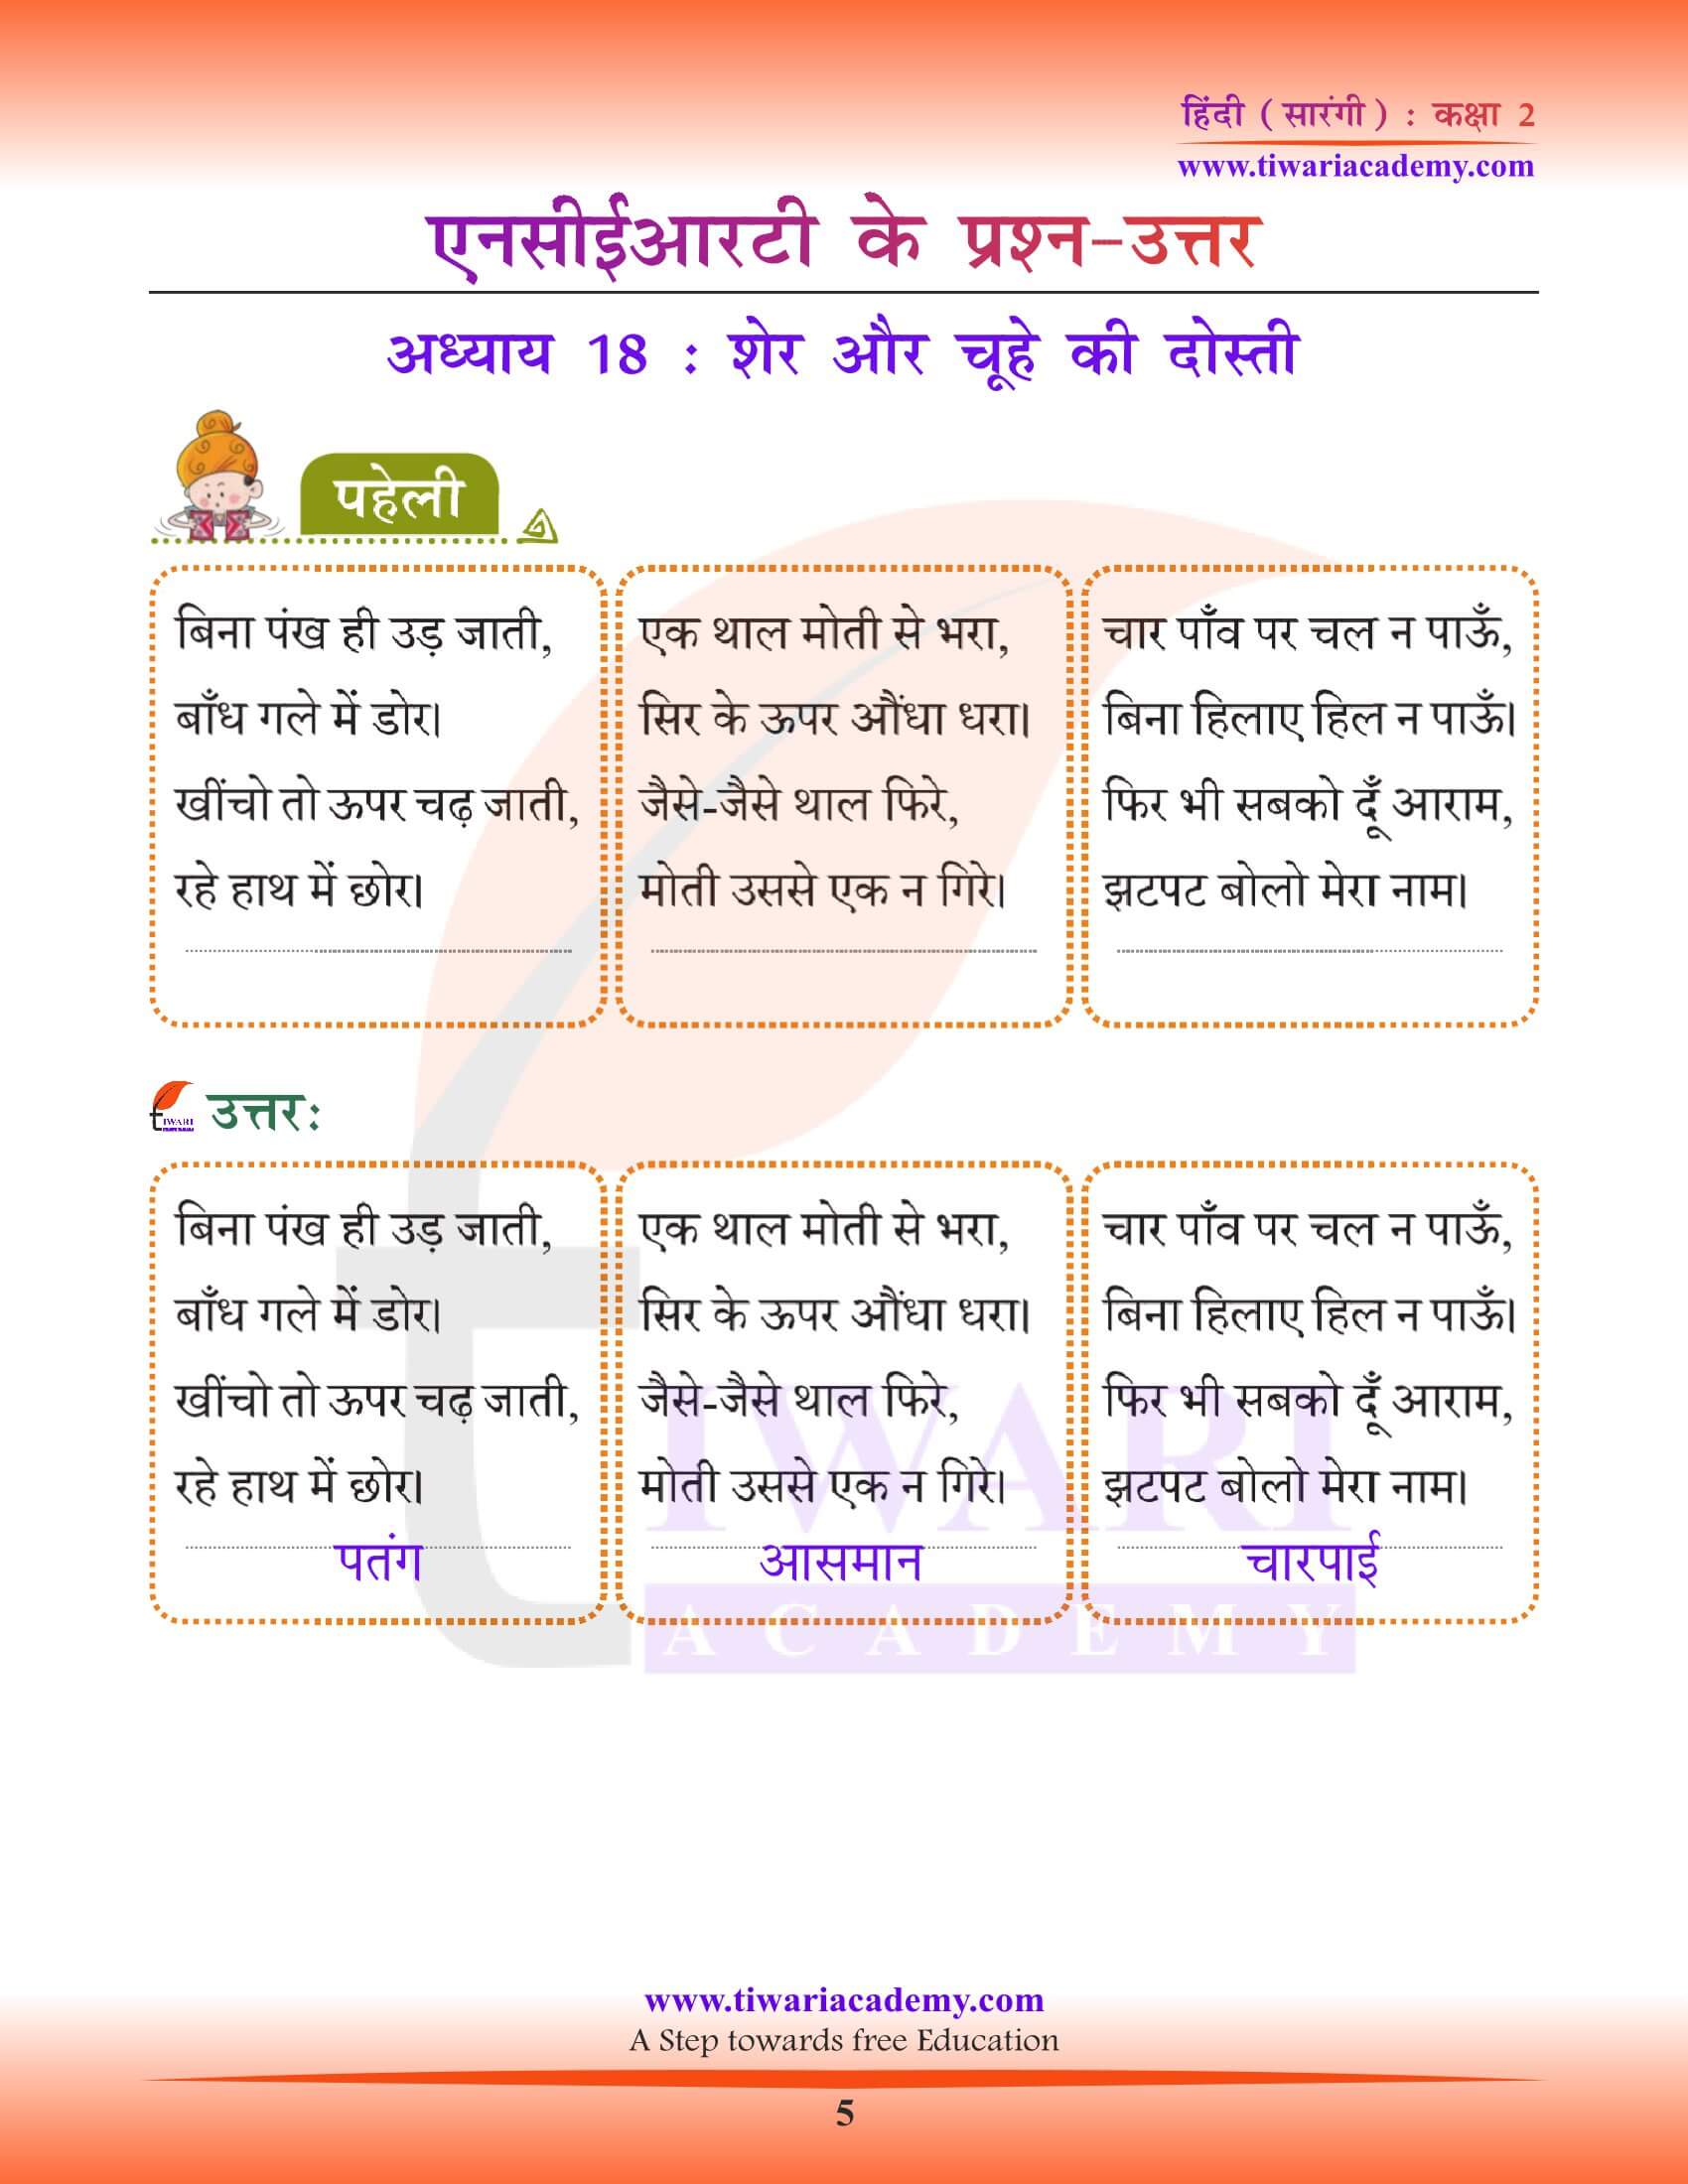 कक्षा 2 हिंदी सारंगी अध्याय 18 के हल